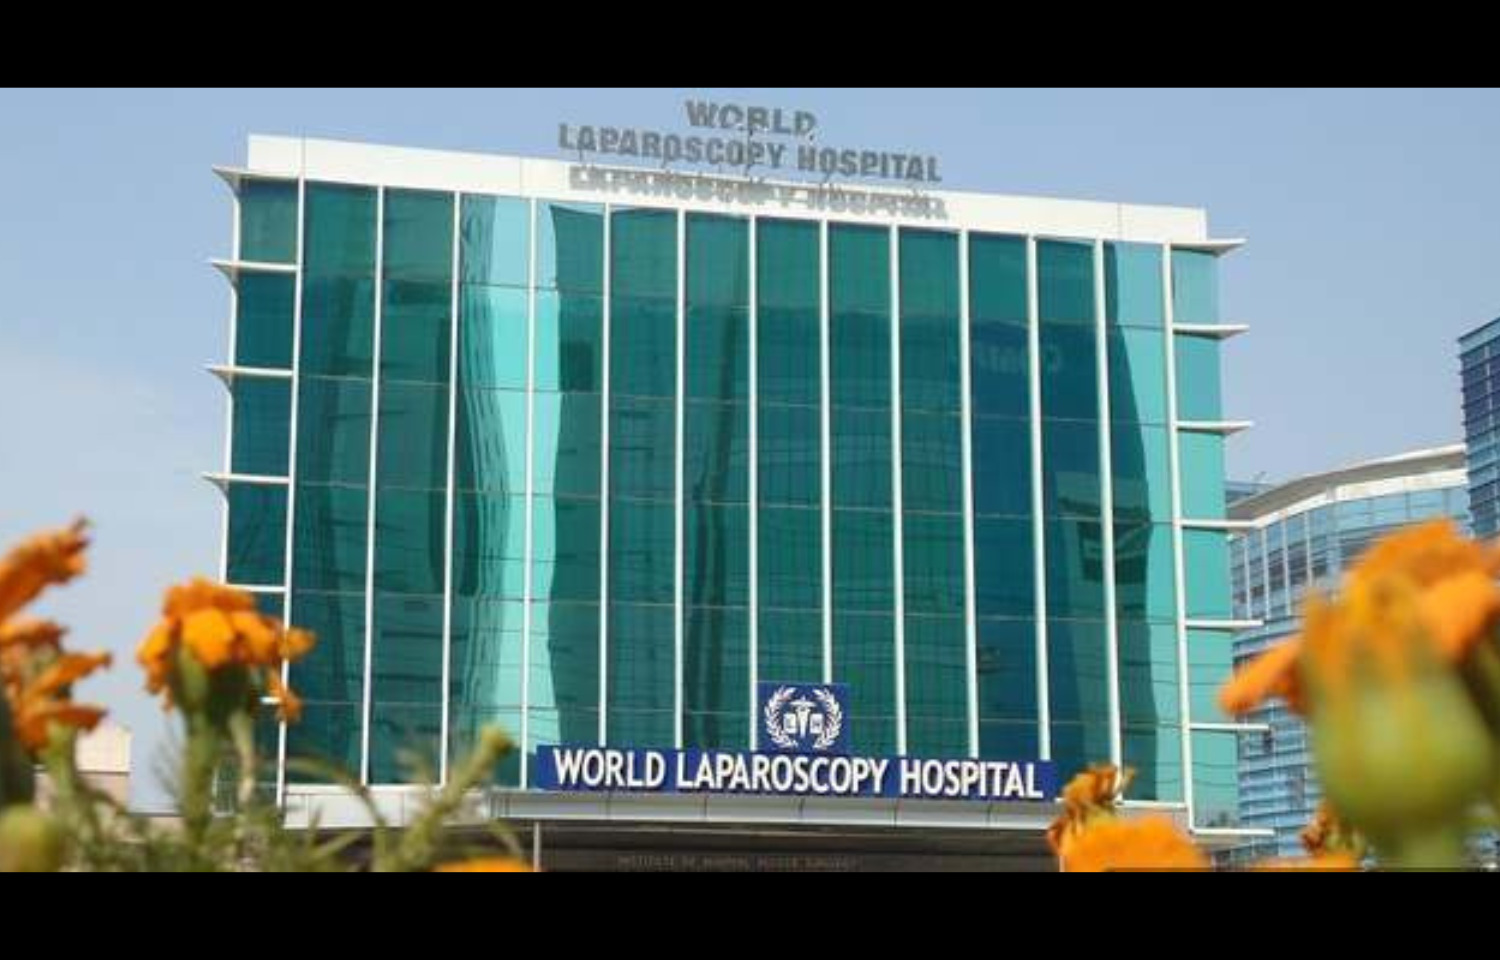 افتتح المستشفى العالمي لتنظير البطن ، الإمارات العربية المتحدة ، مرافق جديدة في الولايات المتحدة الأمريكية